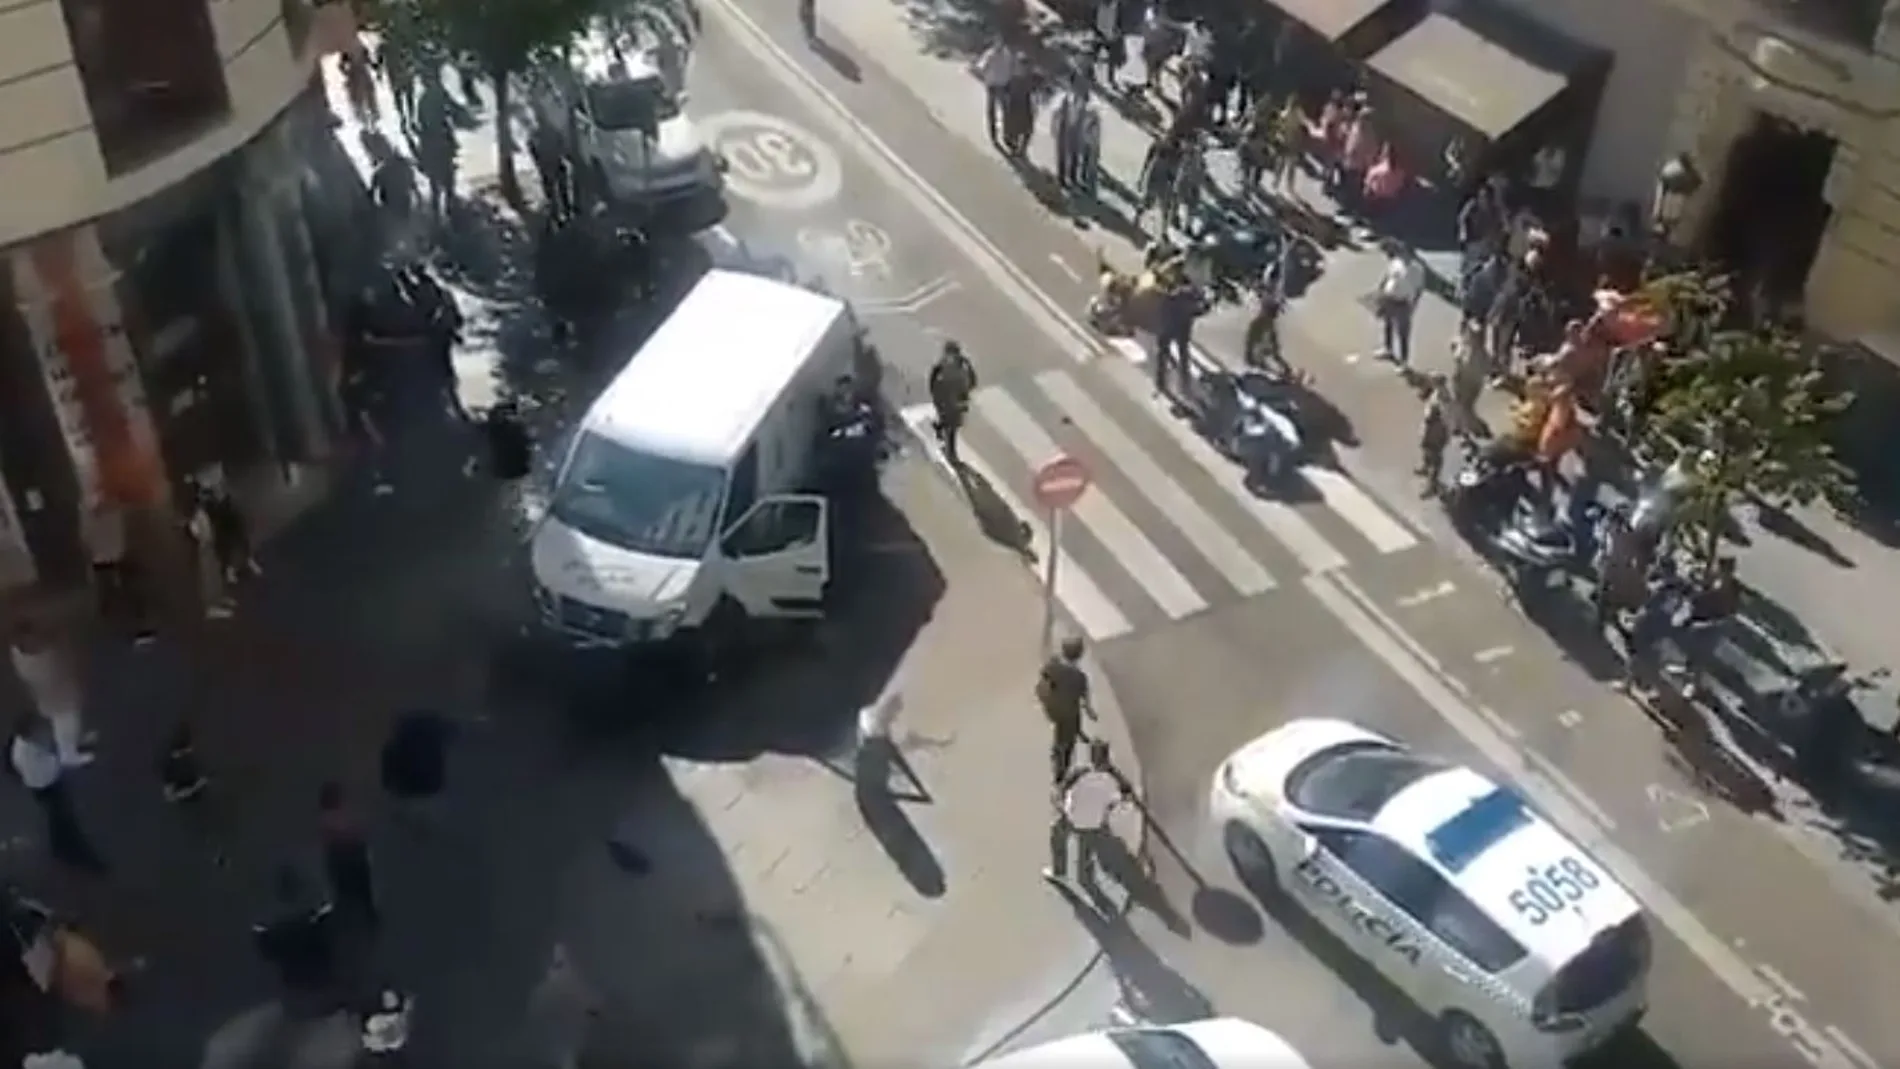 La Policía Municipal ha confirmado que se ha tratado de un intento de robo a un repartidor en la calle Mayor de Madrid / Twitter